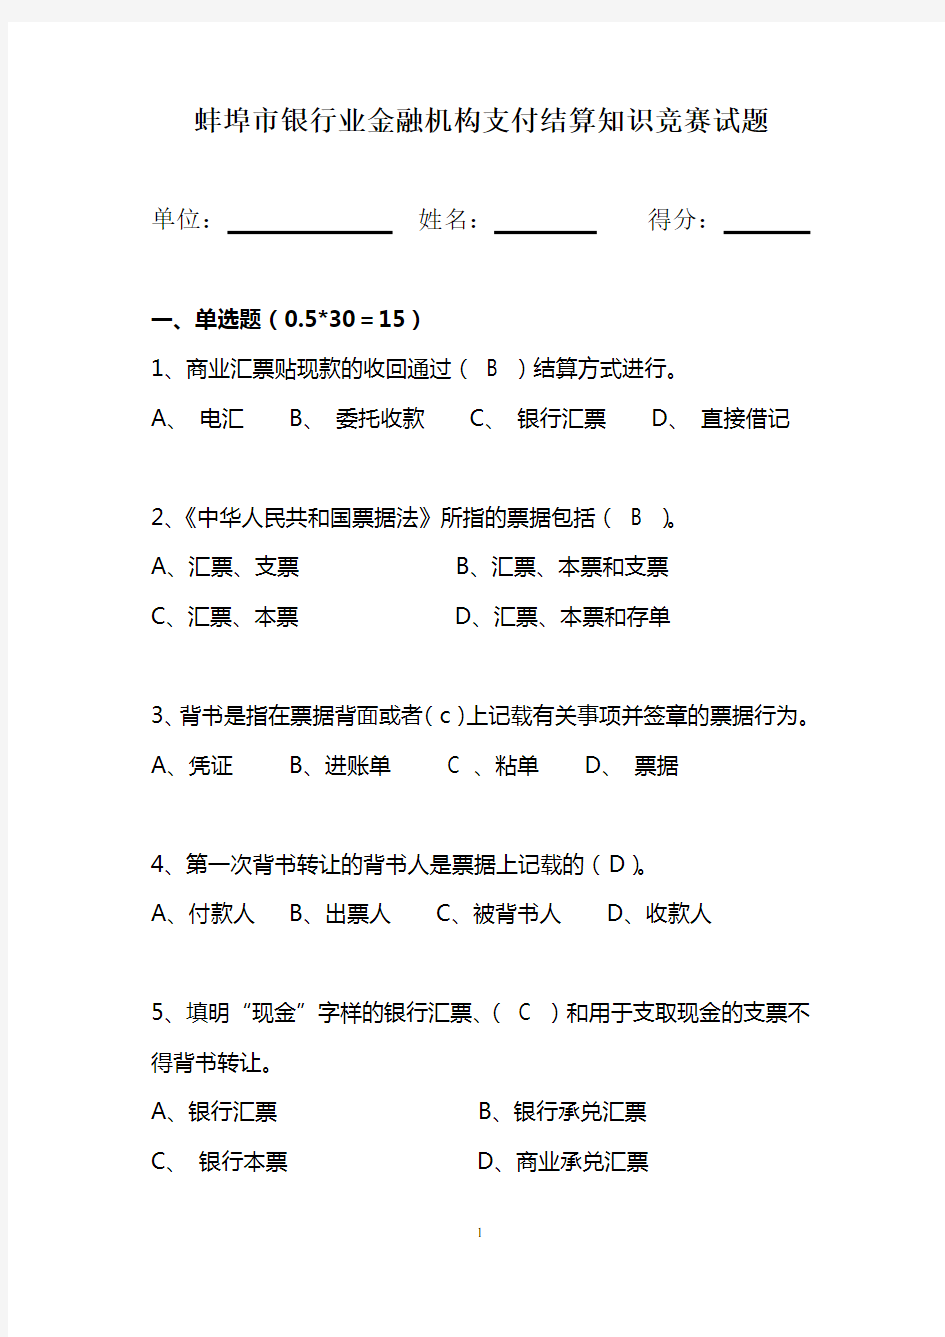 蚌埠市支付结算知识竞赛考试卷